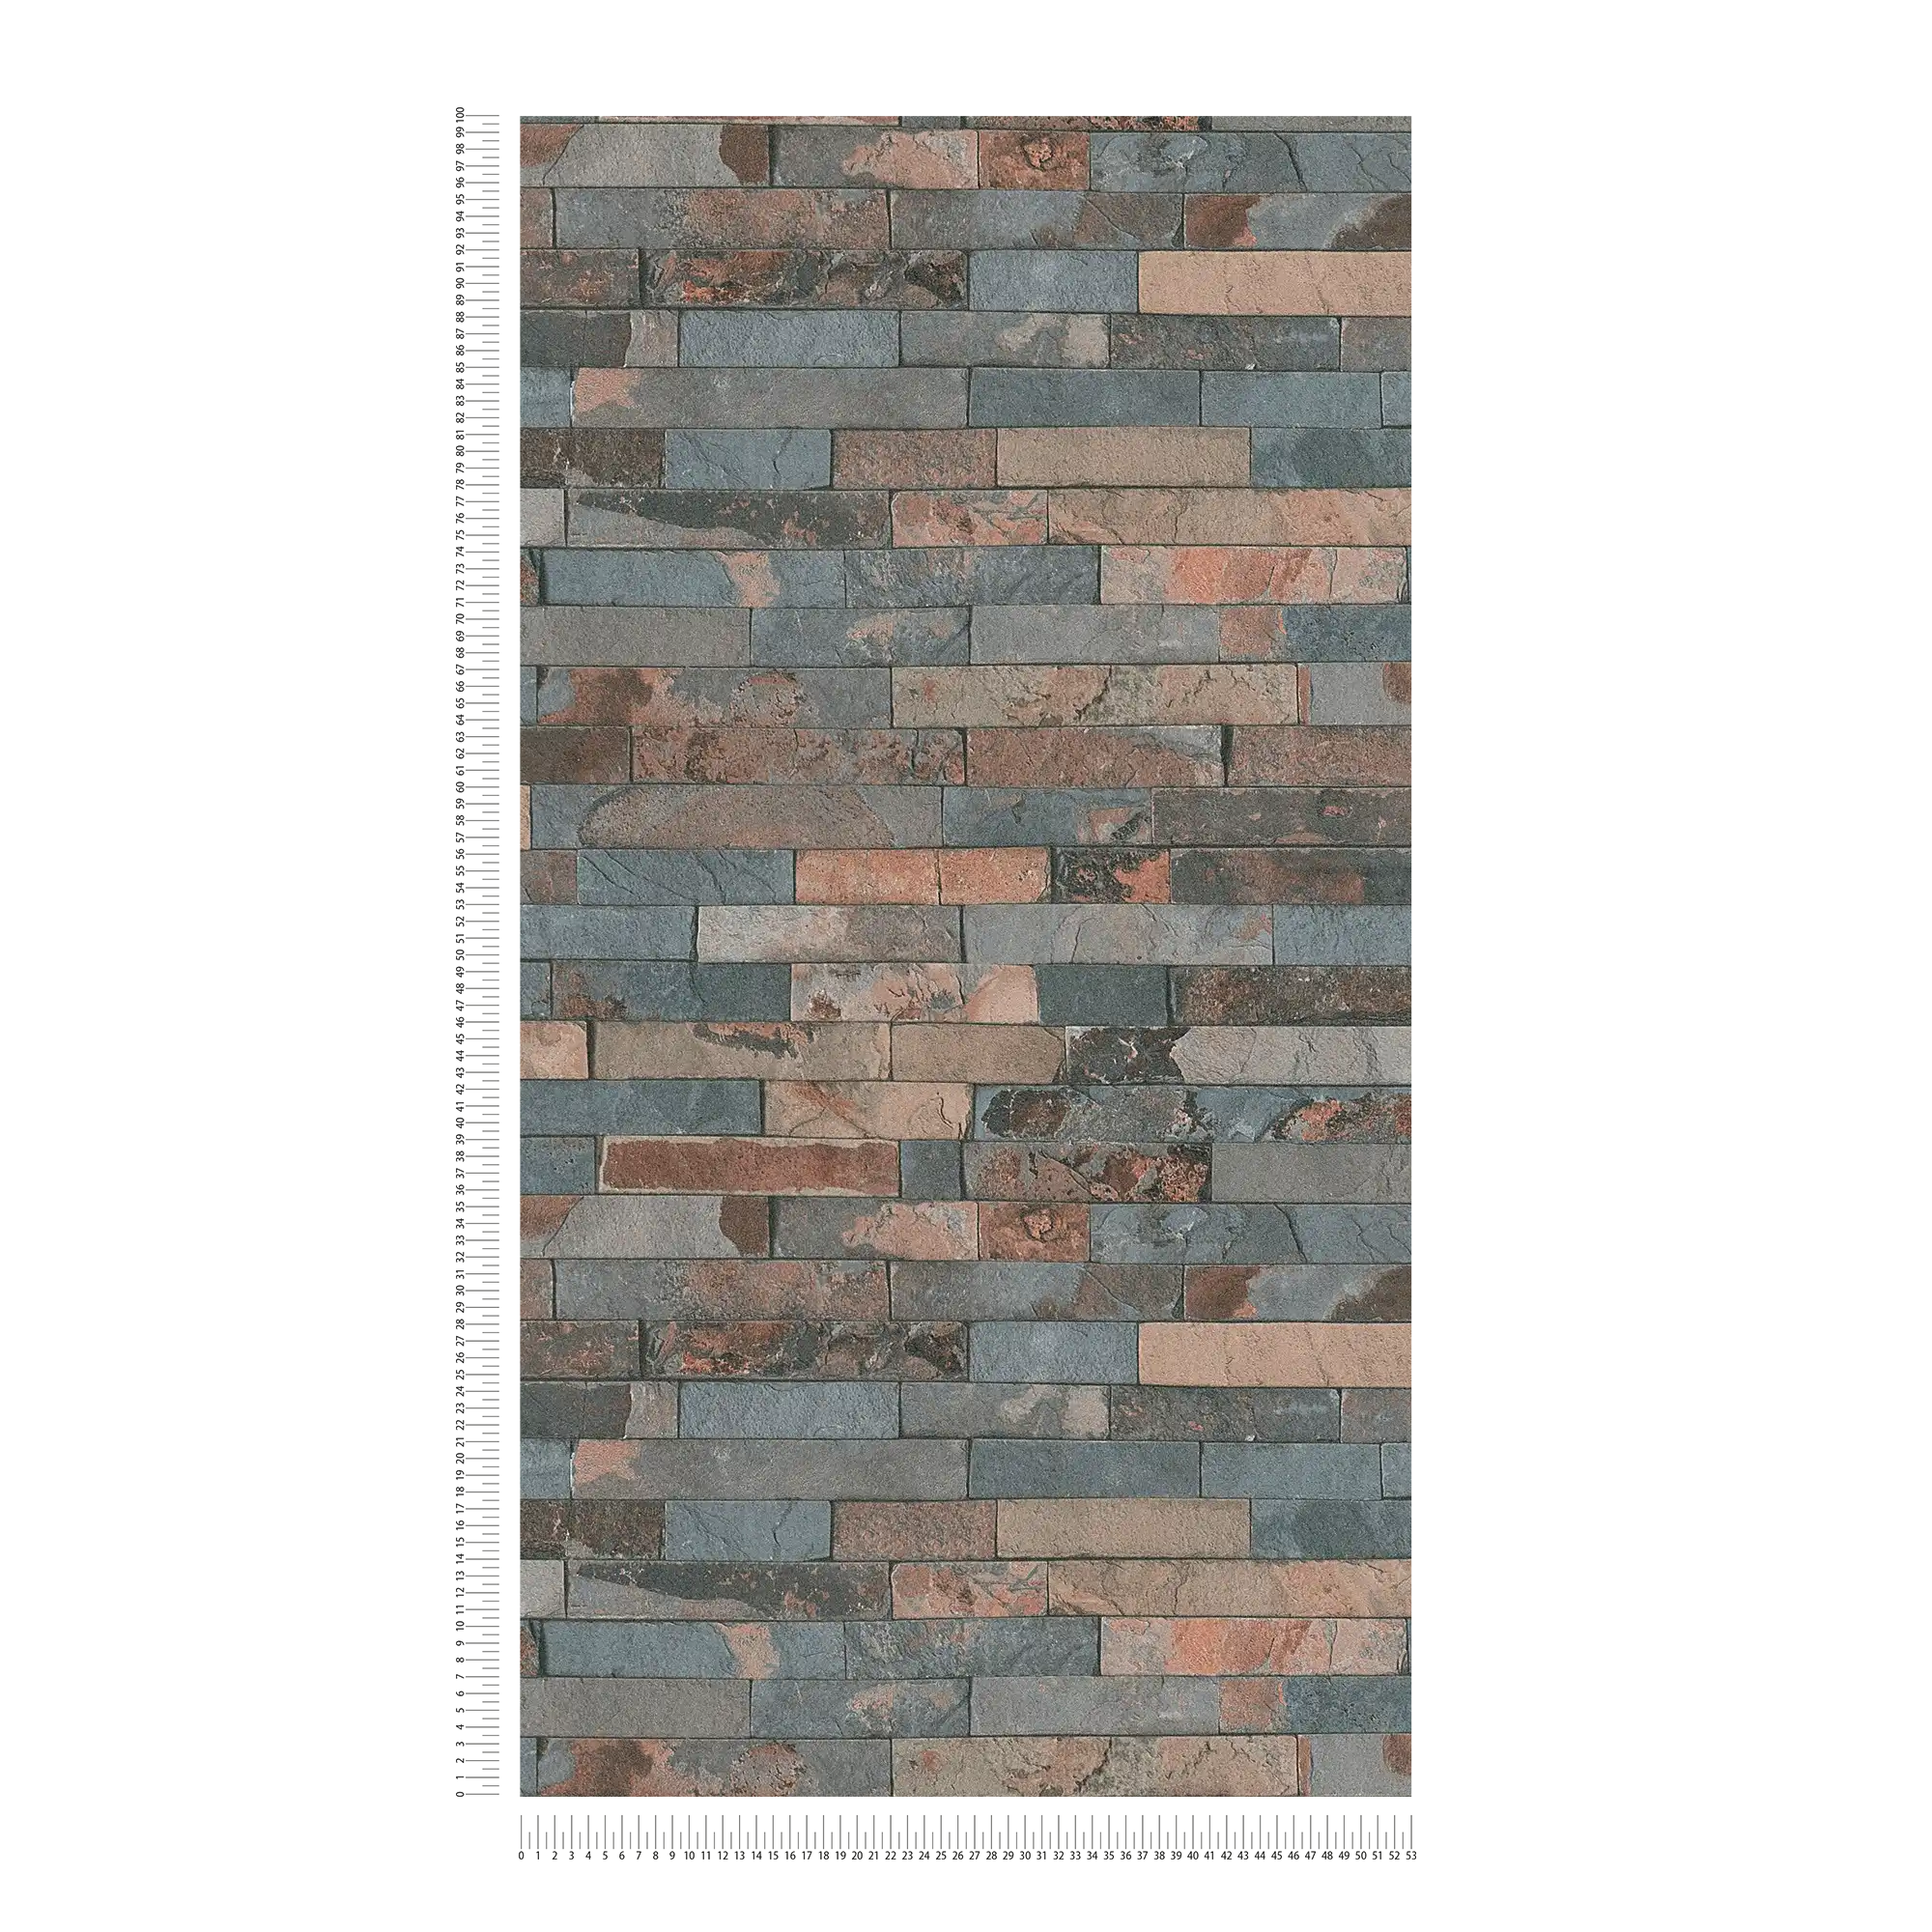             Behang steenlook met donkere muur van natuursteen - grijs, bruin, zwart
        